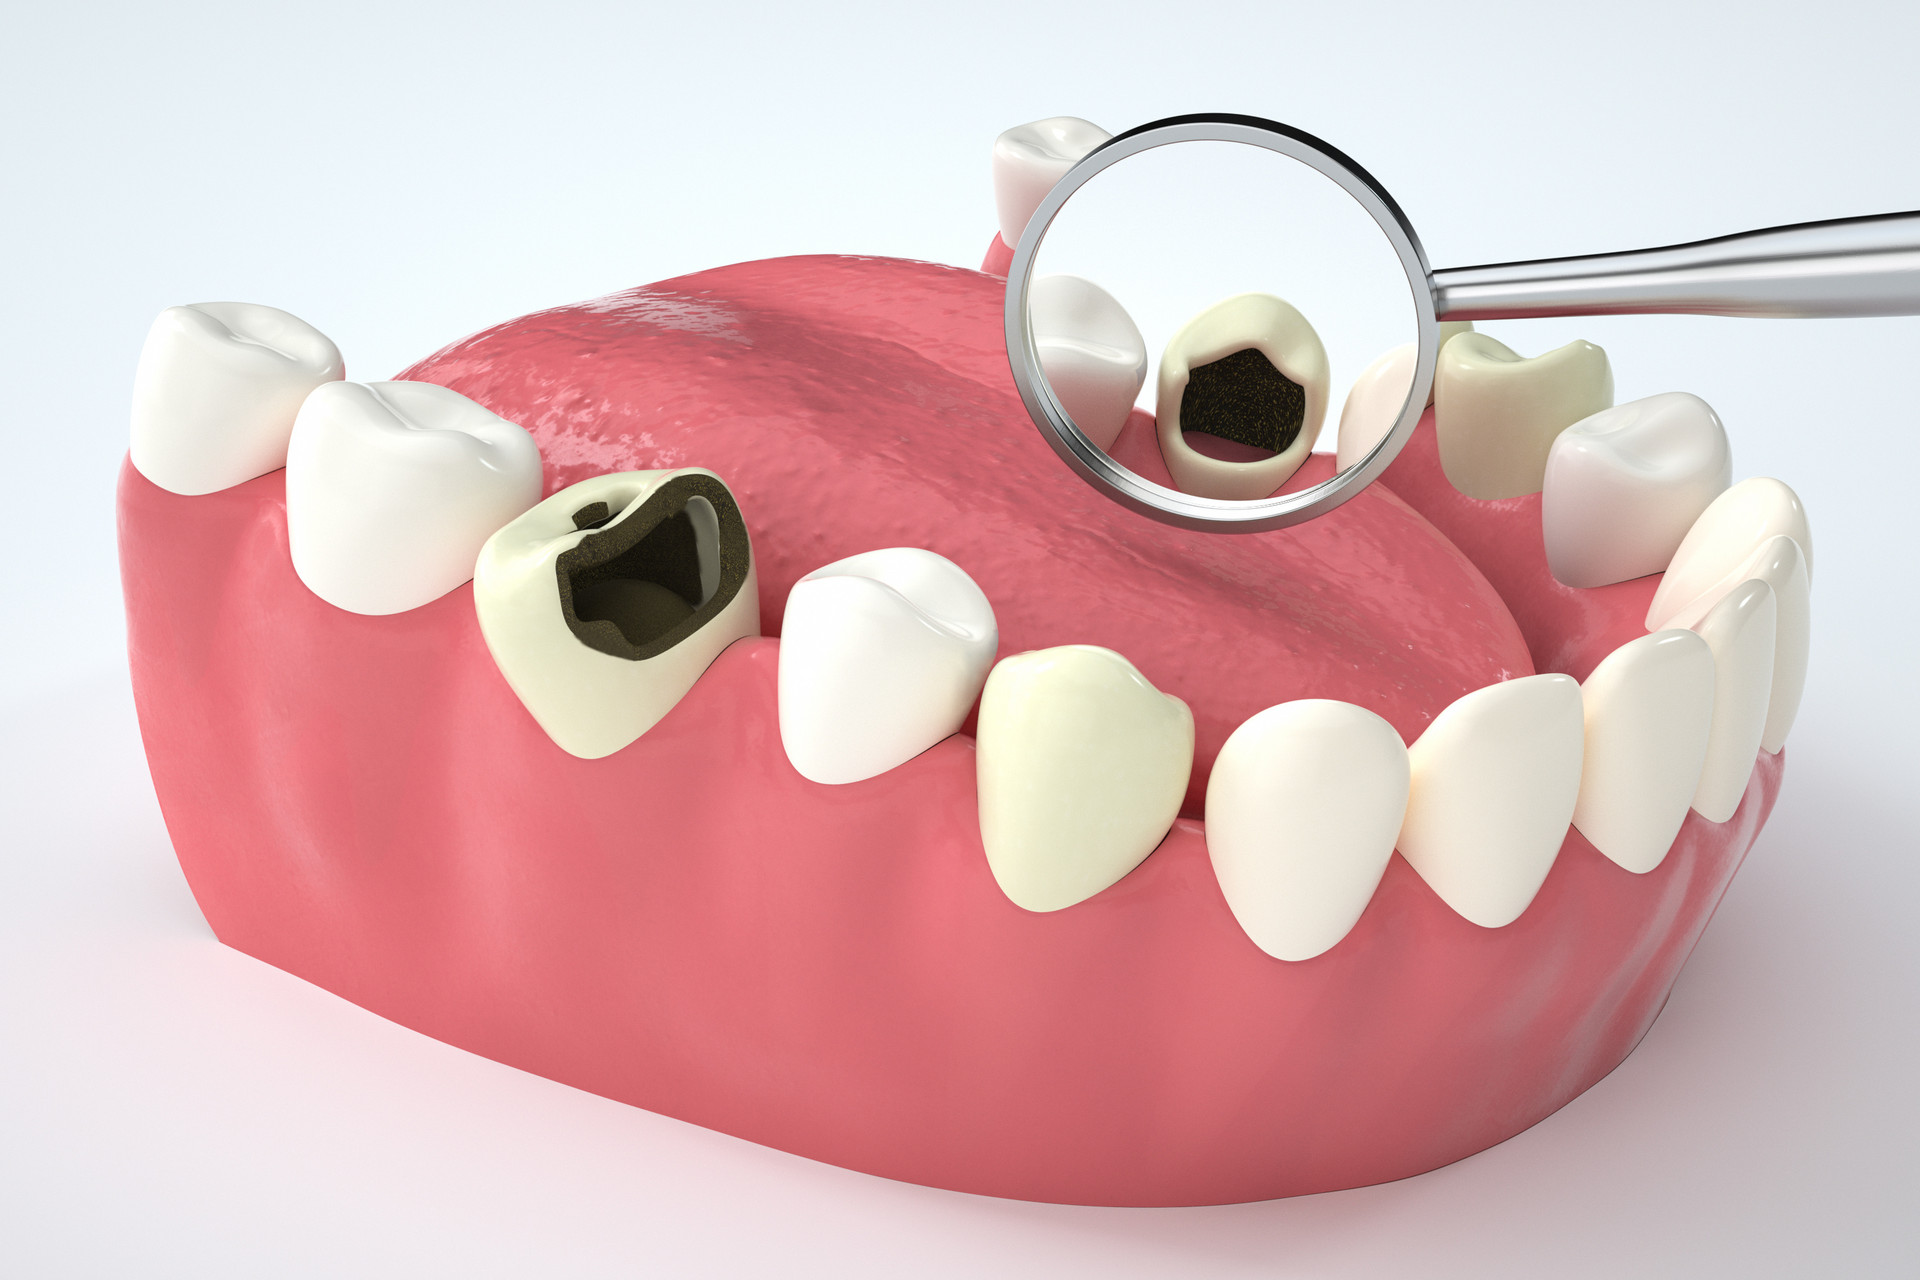 Clin Oral Investig：纳米羟基磷灰石能预防龋齿吗？